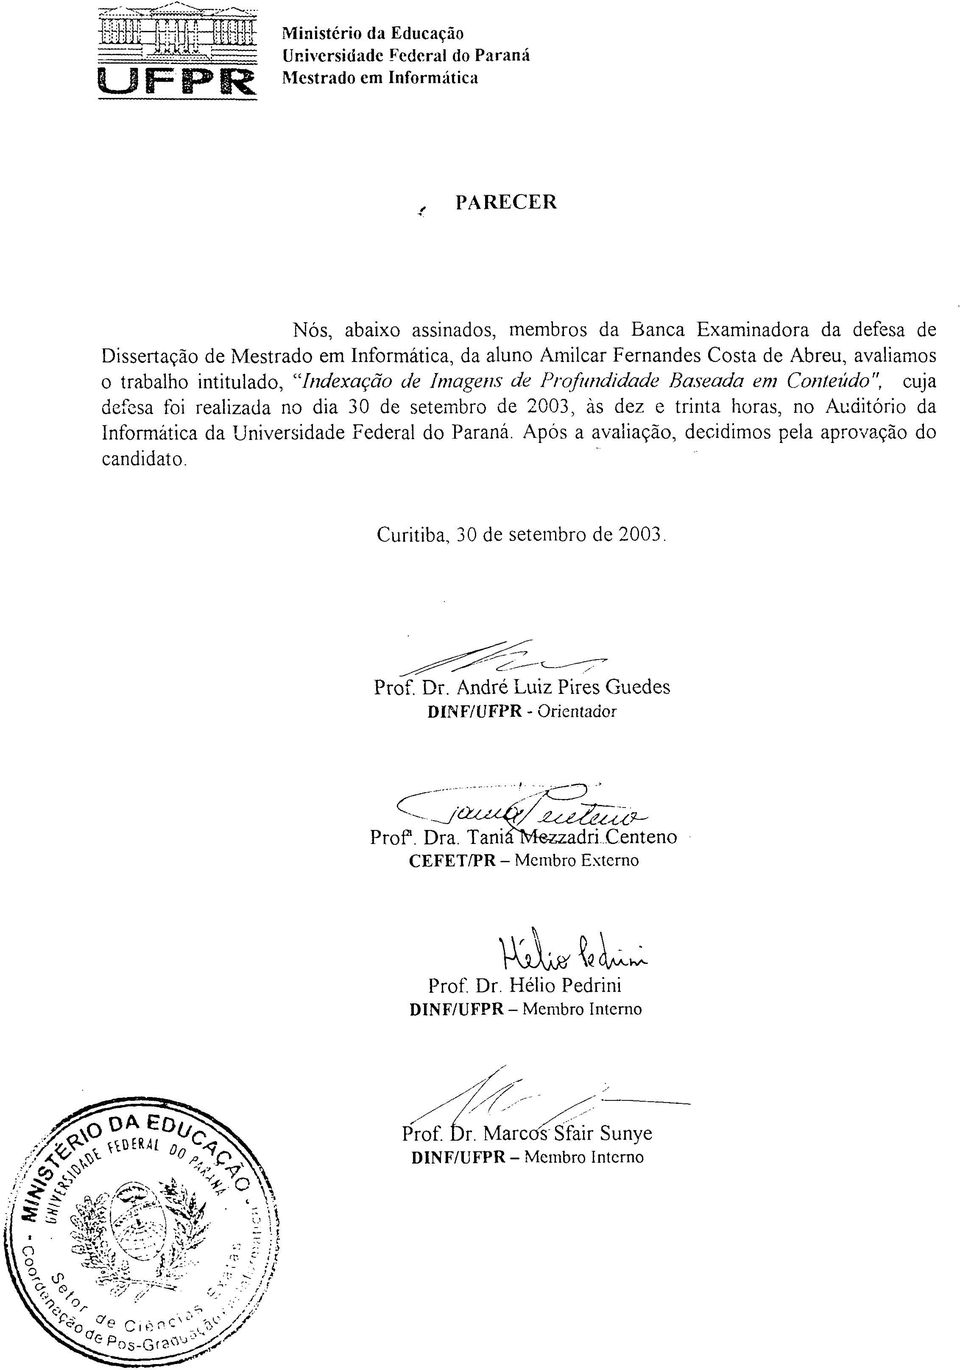 30 de setembro de 2003, às dez e trinta horas, no Auditório da Informática da Universidade Federal do Paraná. Após a avaliação, decidimos pela aprovação do candidato.